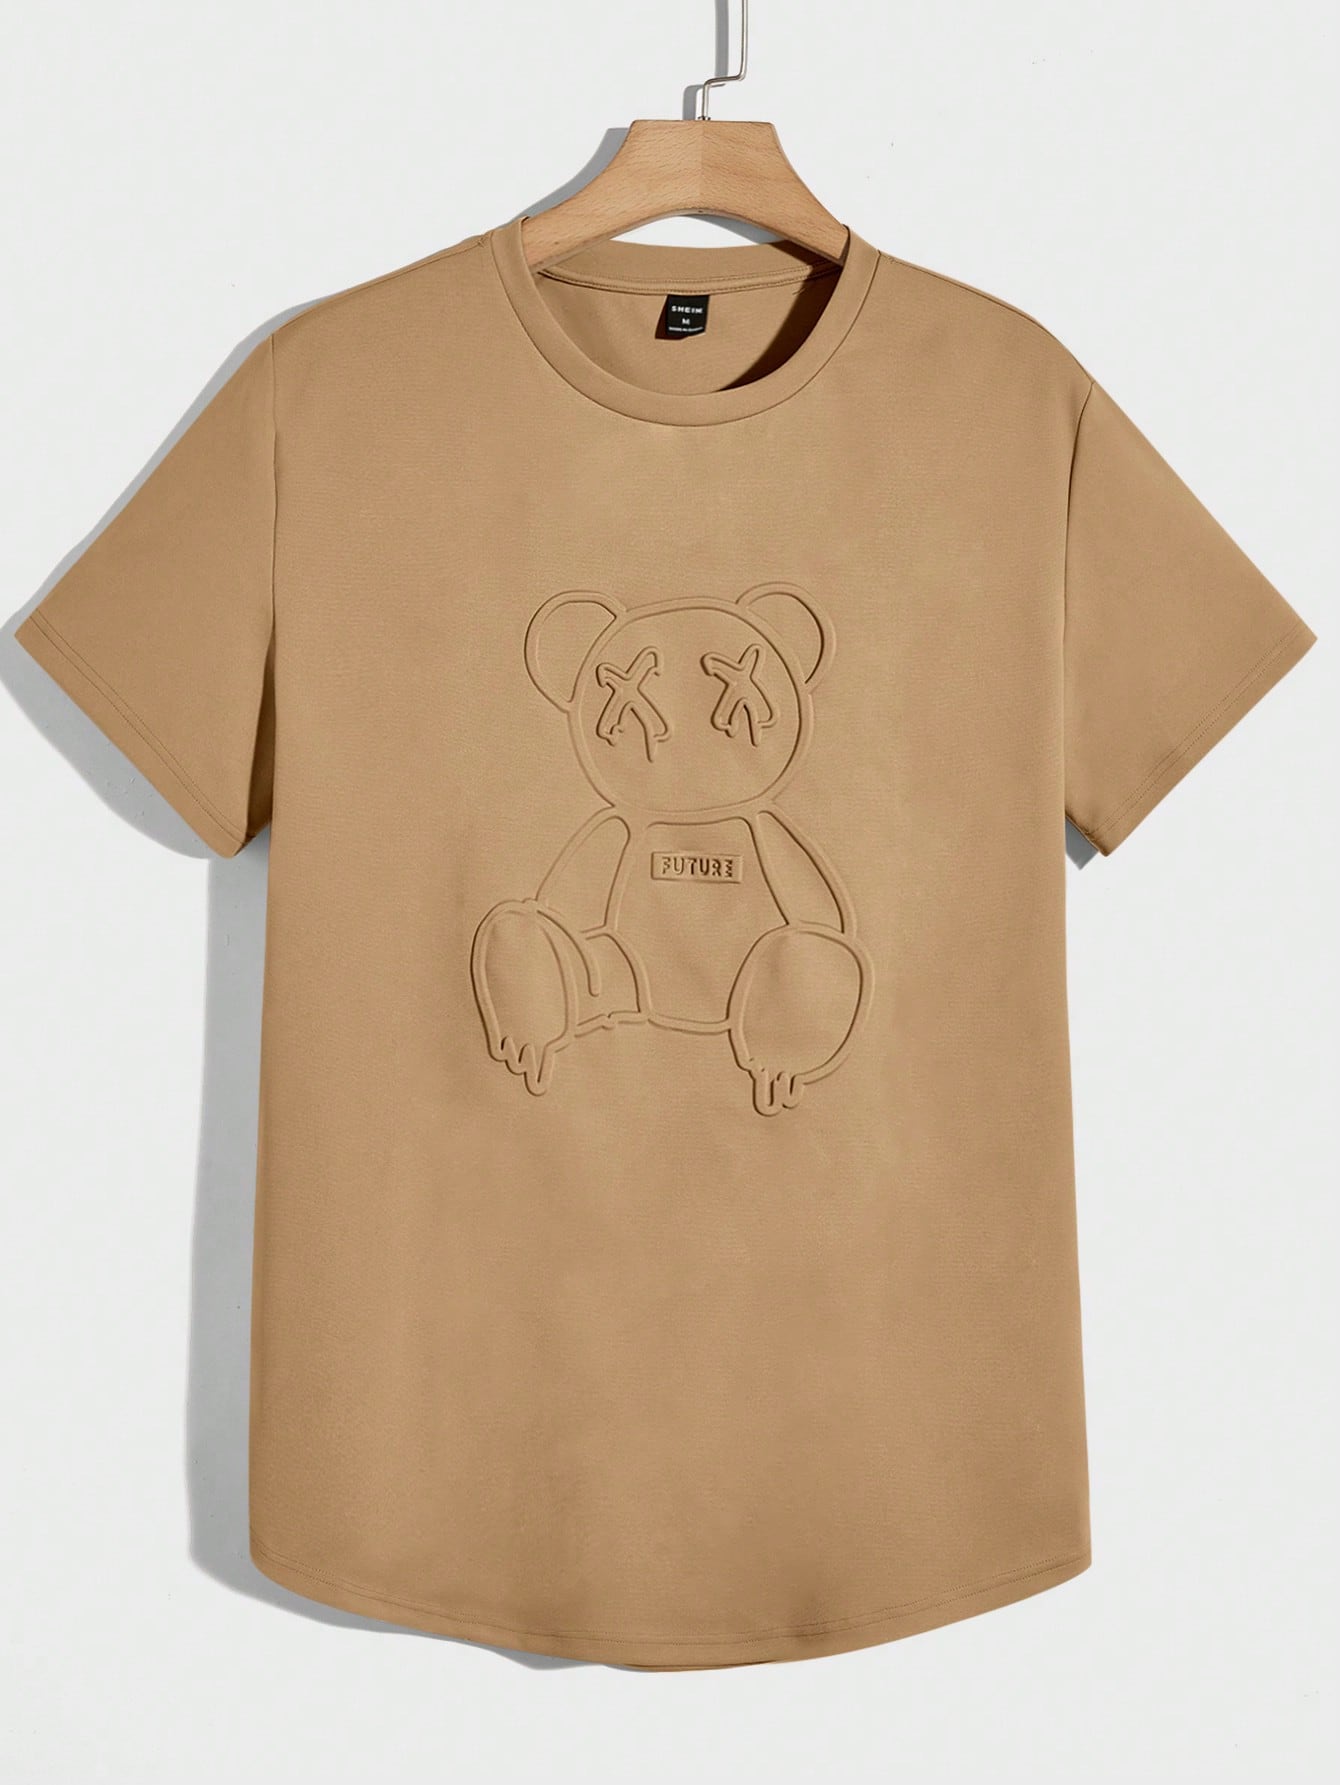 Мужская вязаная футболка Manfinity Hypemode с короткими рукавами и прессованным мишкой, коричневый